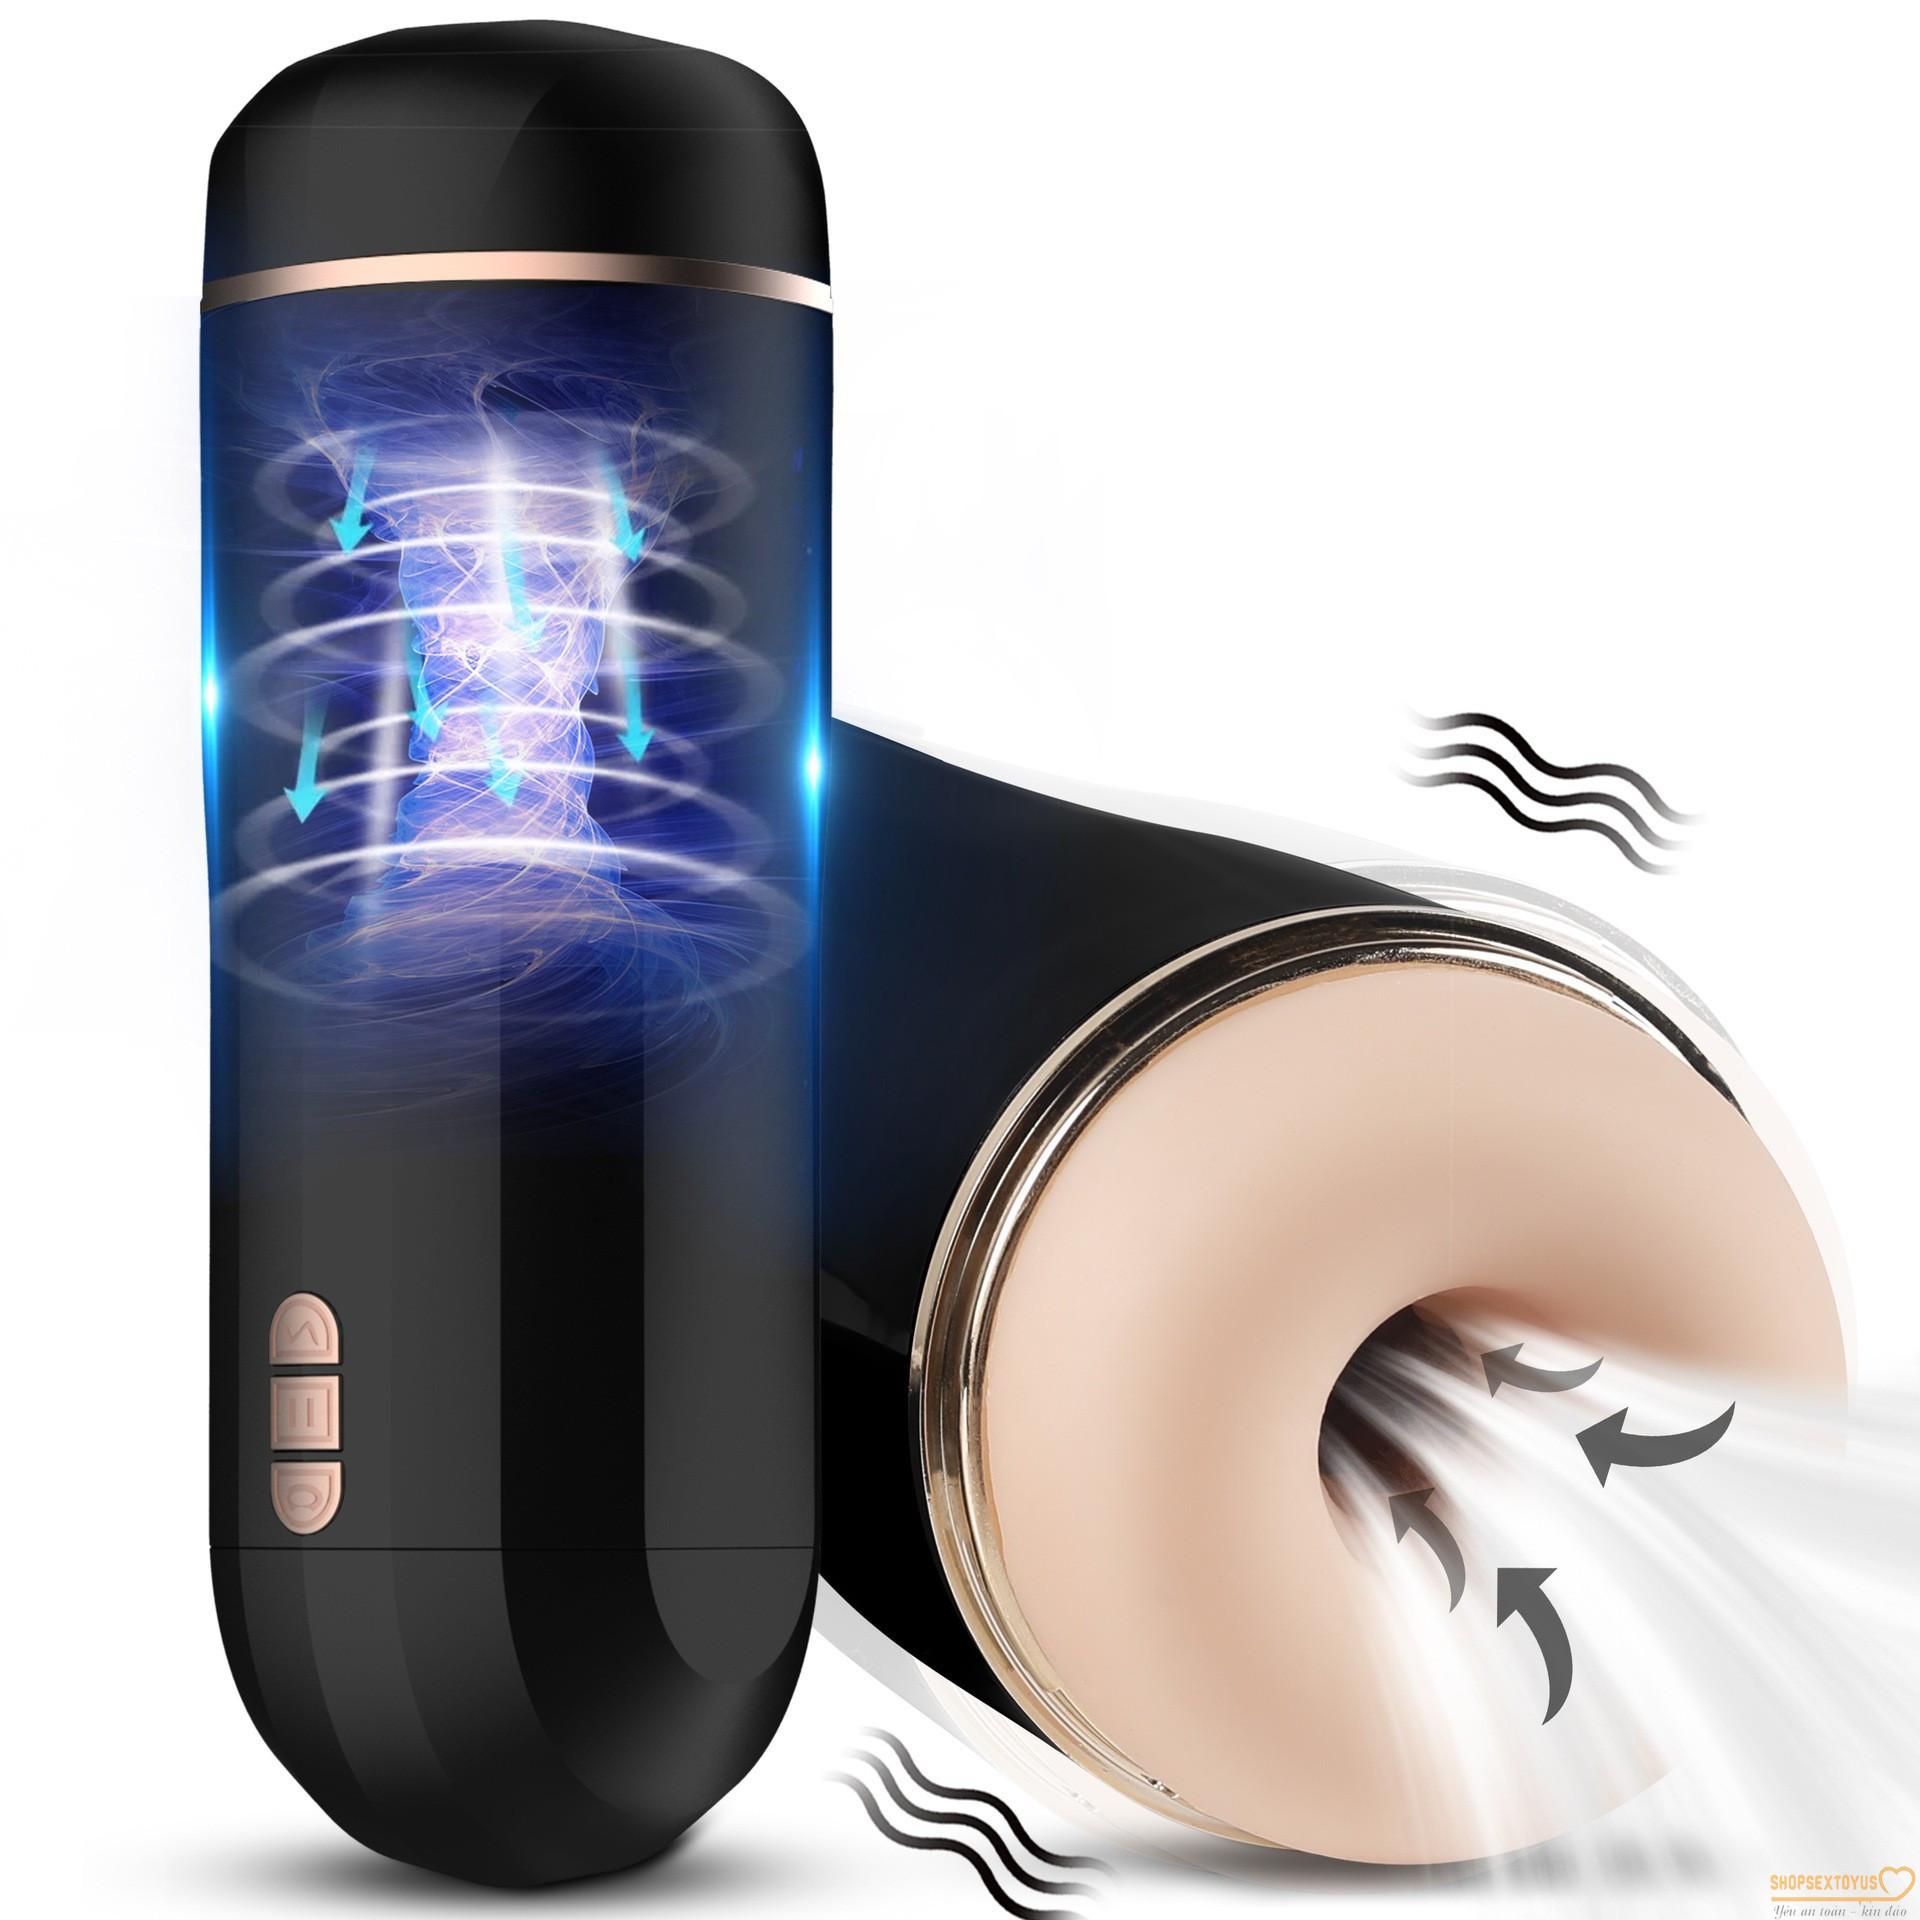 âm đạo tự động Sinuo dụng cụ âm đạo bú mút tự động- ADGCT 477 | cốc tự sướng sextoy bú mút đa chế độ